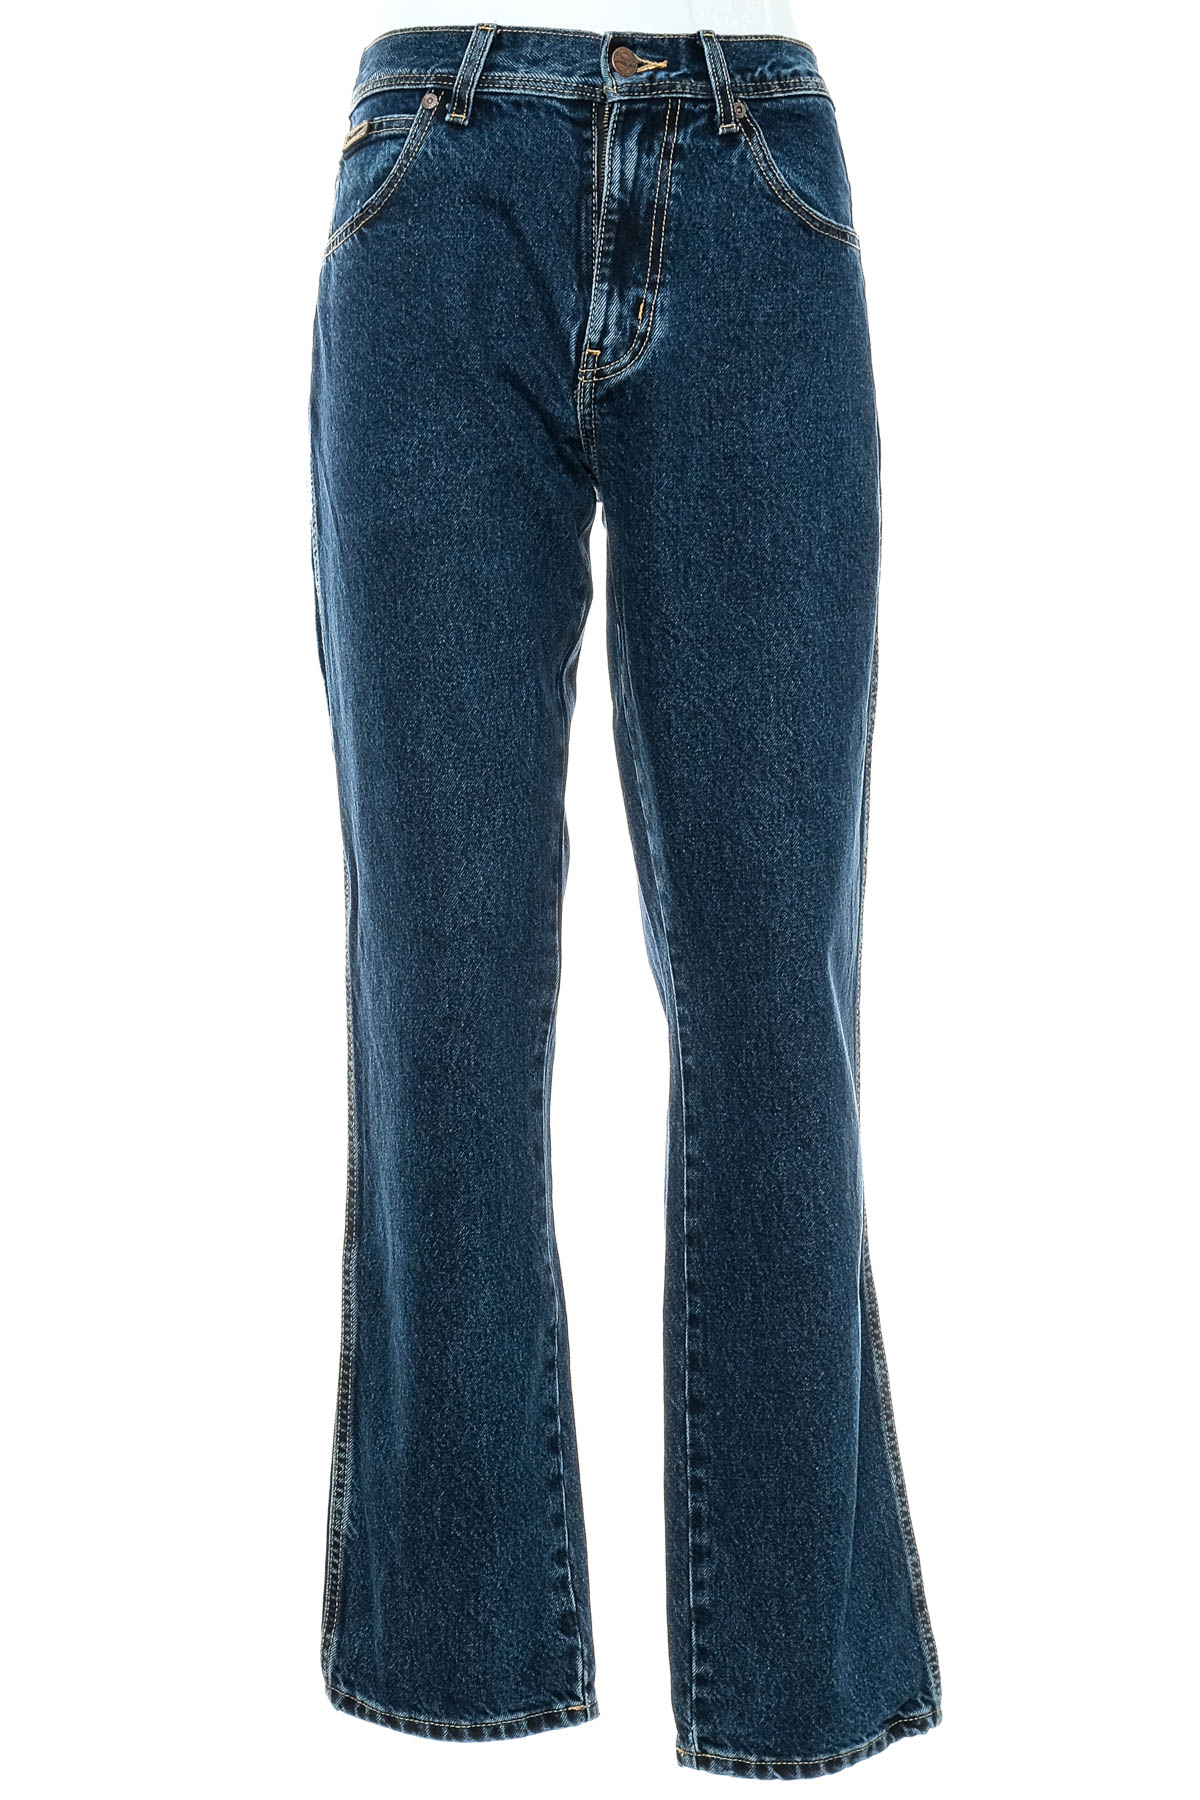 Jeans pentru bărbăți - Wrangler - 0